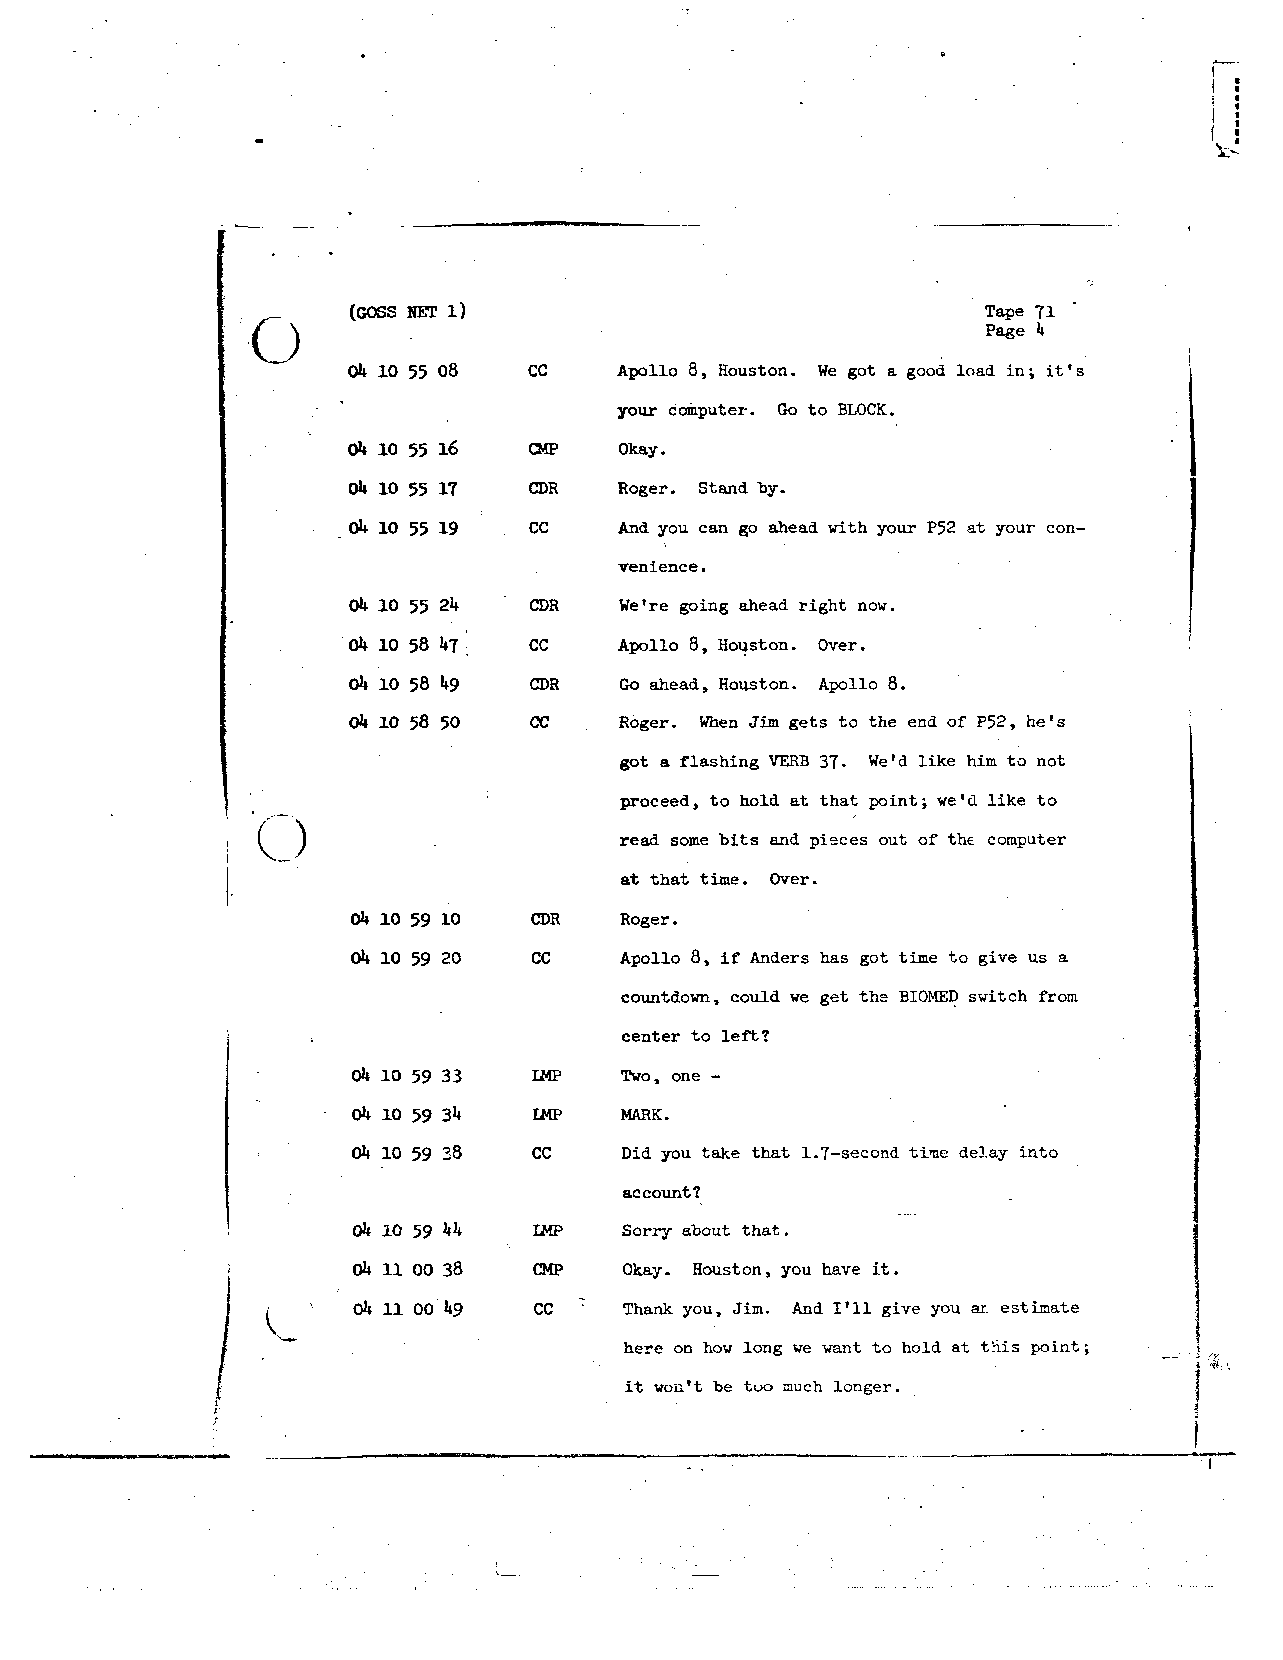 Page 567 of Apollo 8’s original transcript